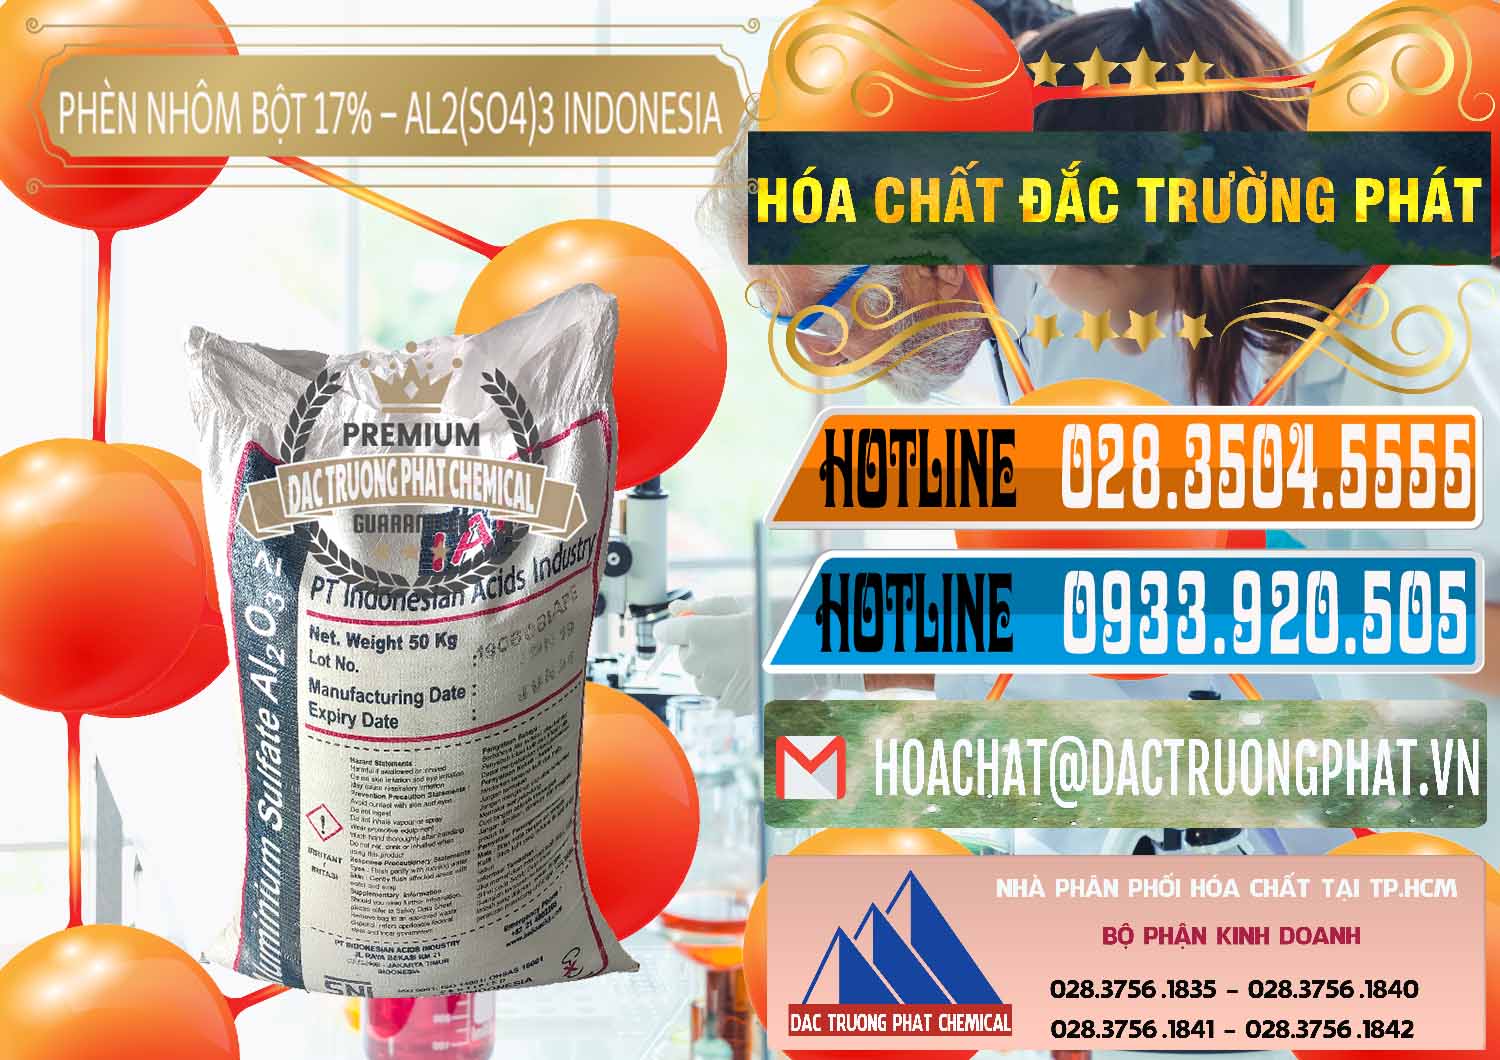 Bán & phân phối Phèn Nhôm Bột - Al2(SO4)3 17% bao 50kg Indonesia - 0112 - Cty chuyên bán & cung cấp hóa chất tại TP.HCM - stmp.net